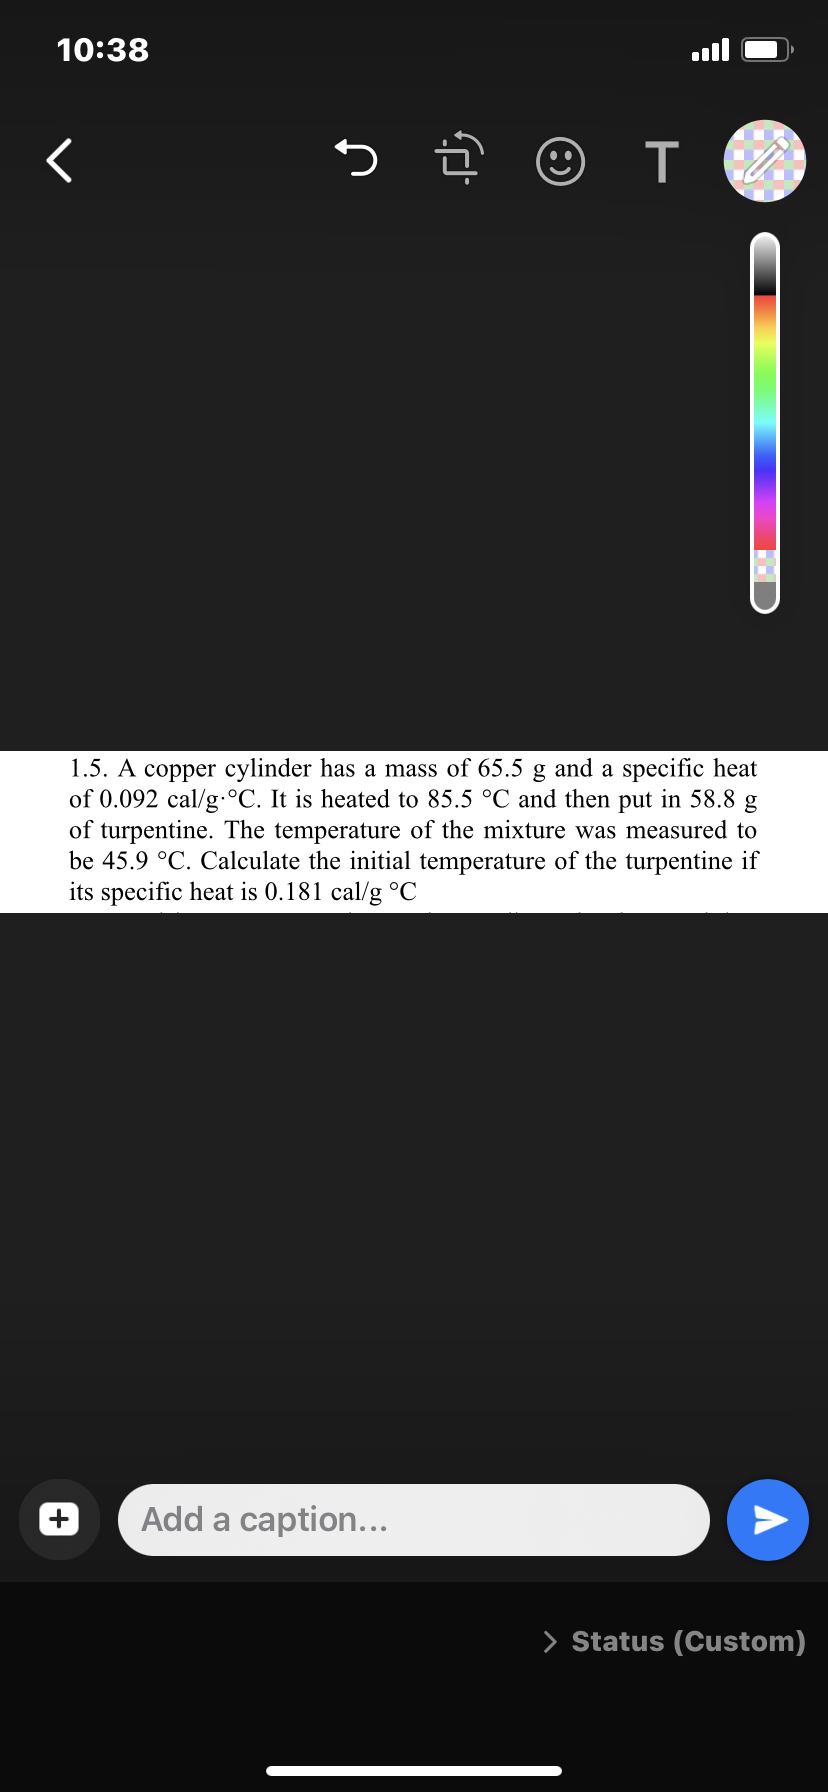 10:38
く
つ
1.5. A copper cylinder has a mass of 65.5 g and a specific heat
of 0.092 cal/g.°C. It is heated to 85.5 °C and then put in 58.8 g
of turpentine. The temperature of the mixture was measured to
be 45.9 °C. Calculate the initial temperature of the turpentine if
its specific heat is 0.181 cal/g °C
Add a caption...
> Status (Custom)
